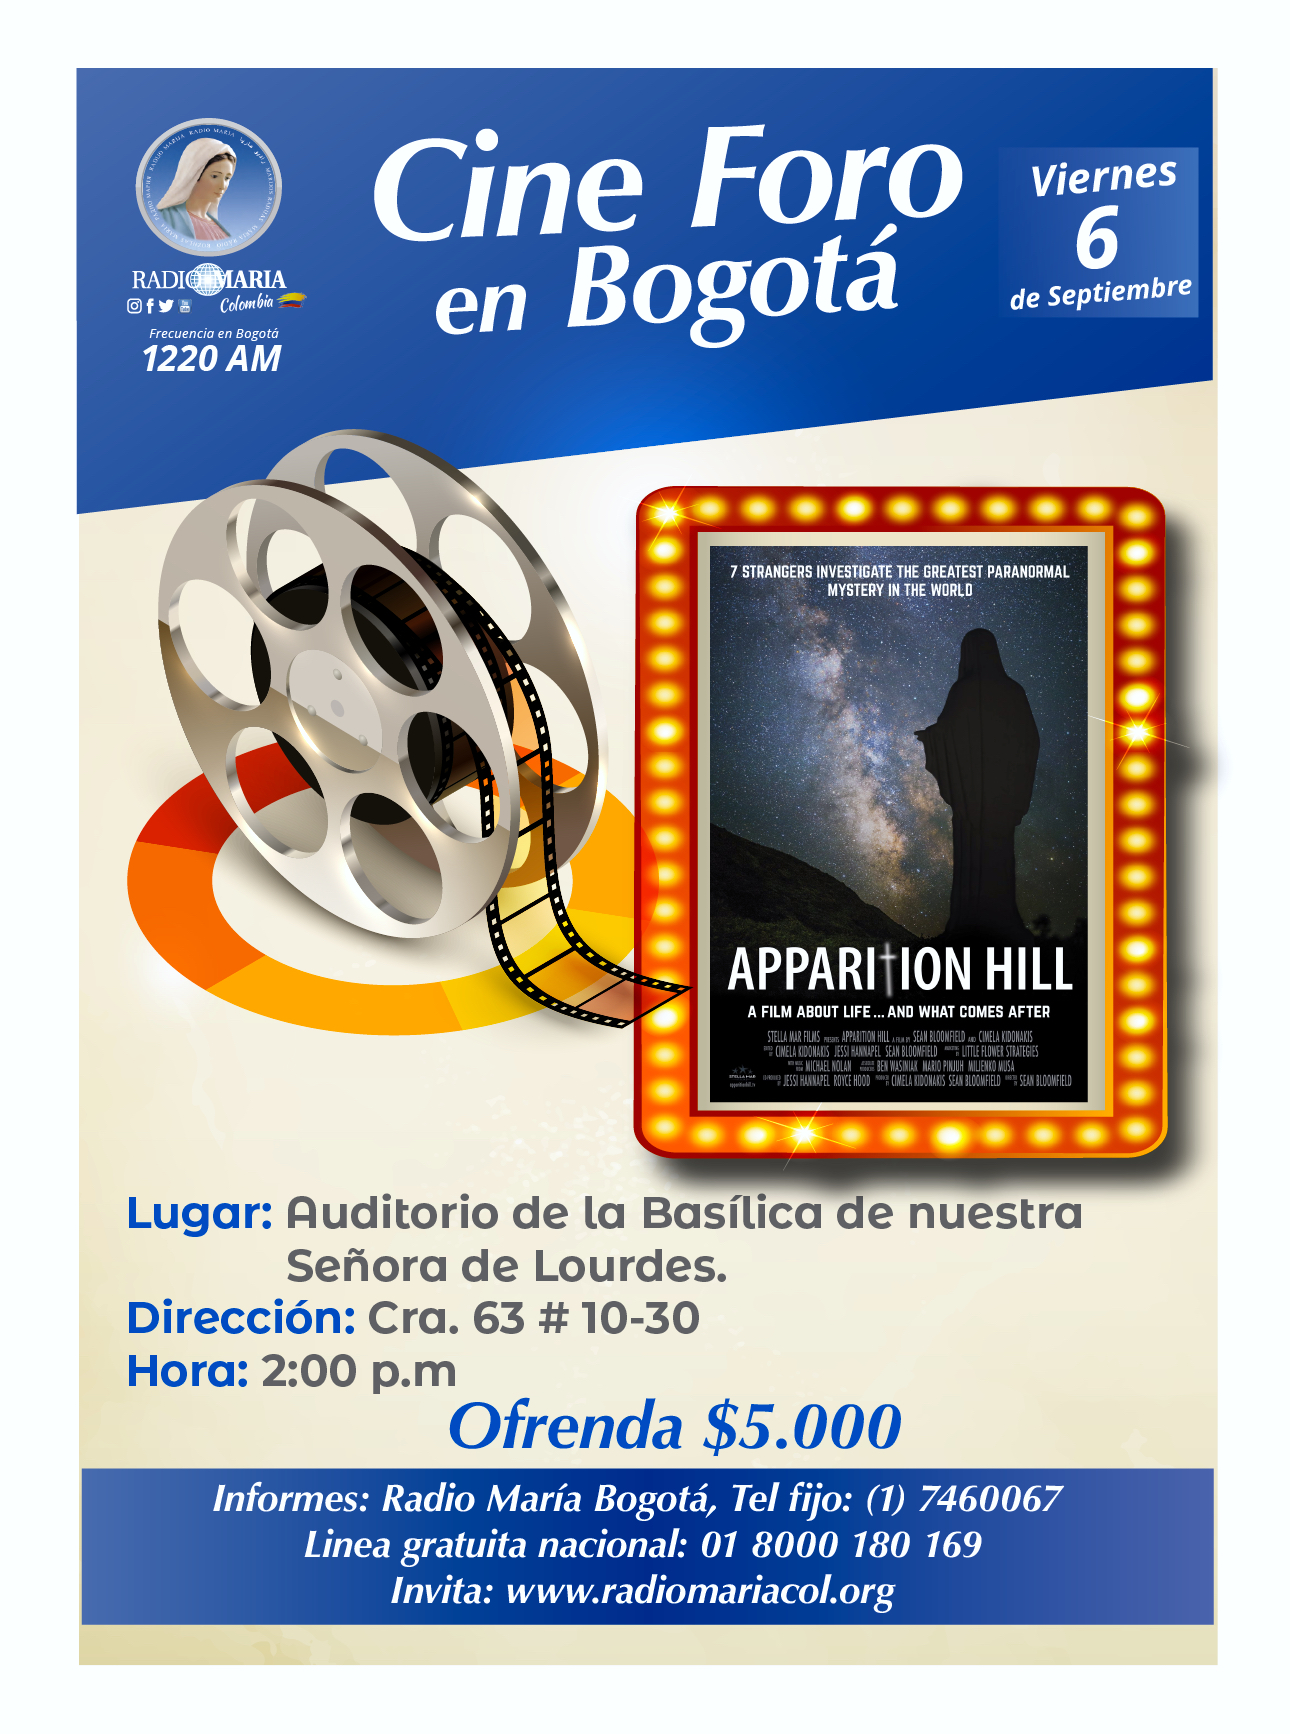 Cine foro en Bogotá 6 de septiembre